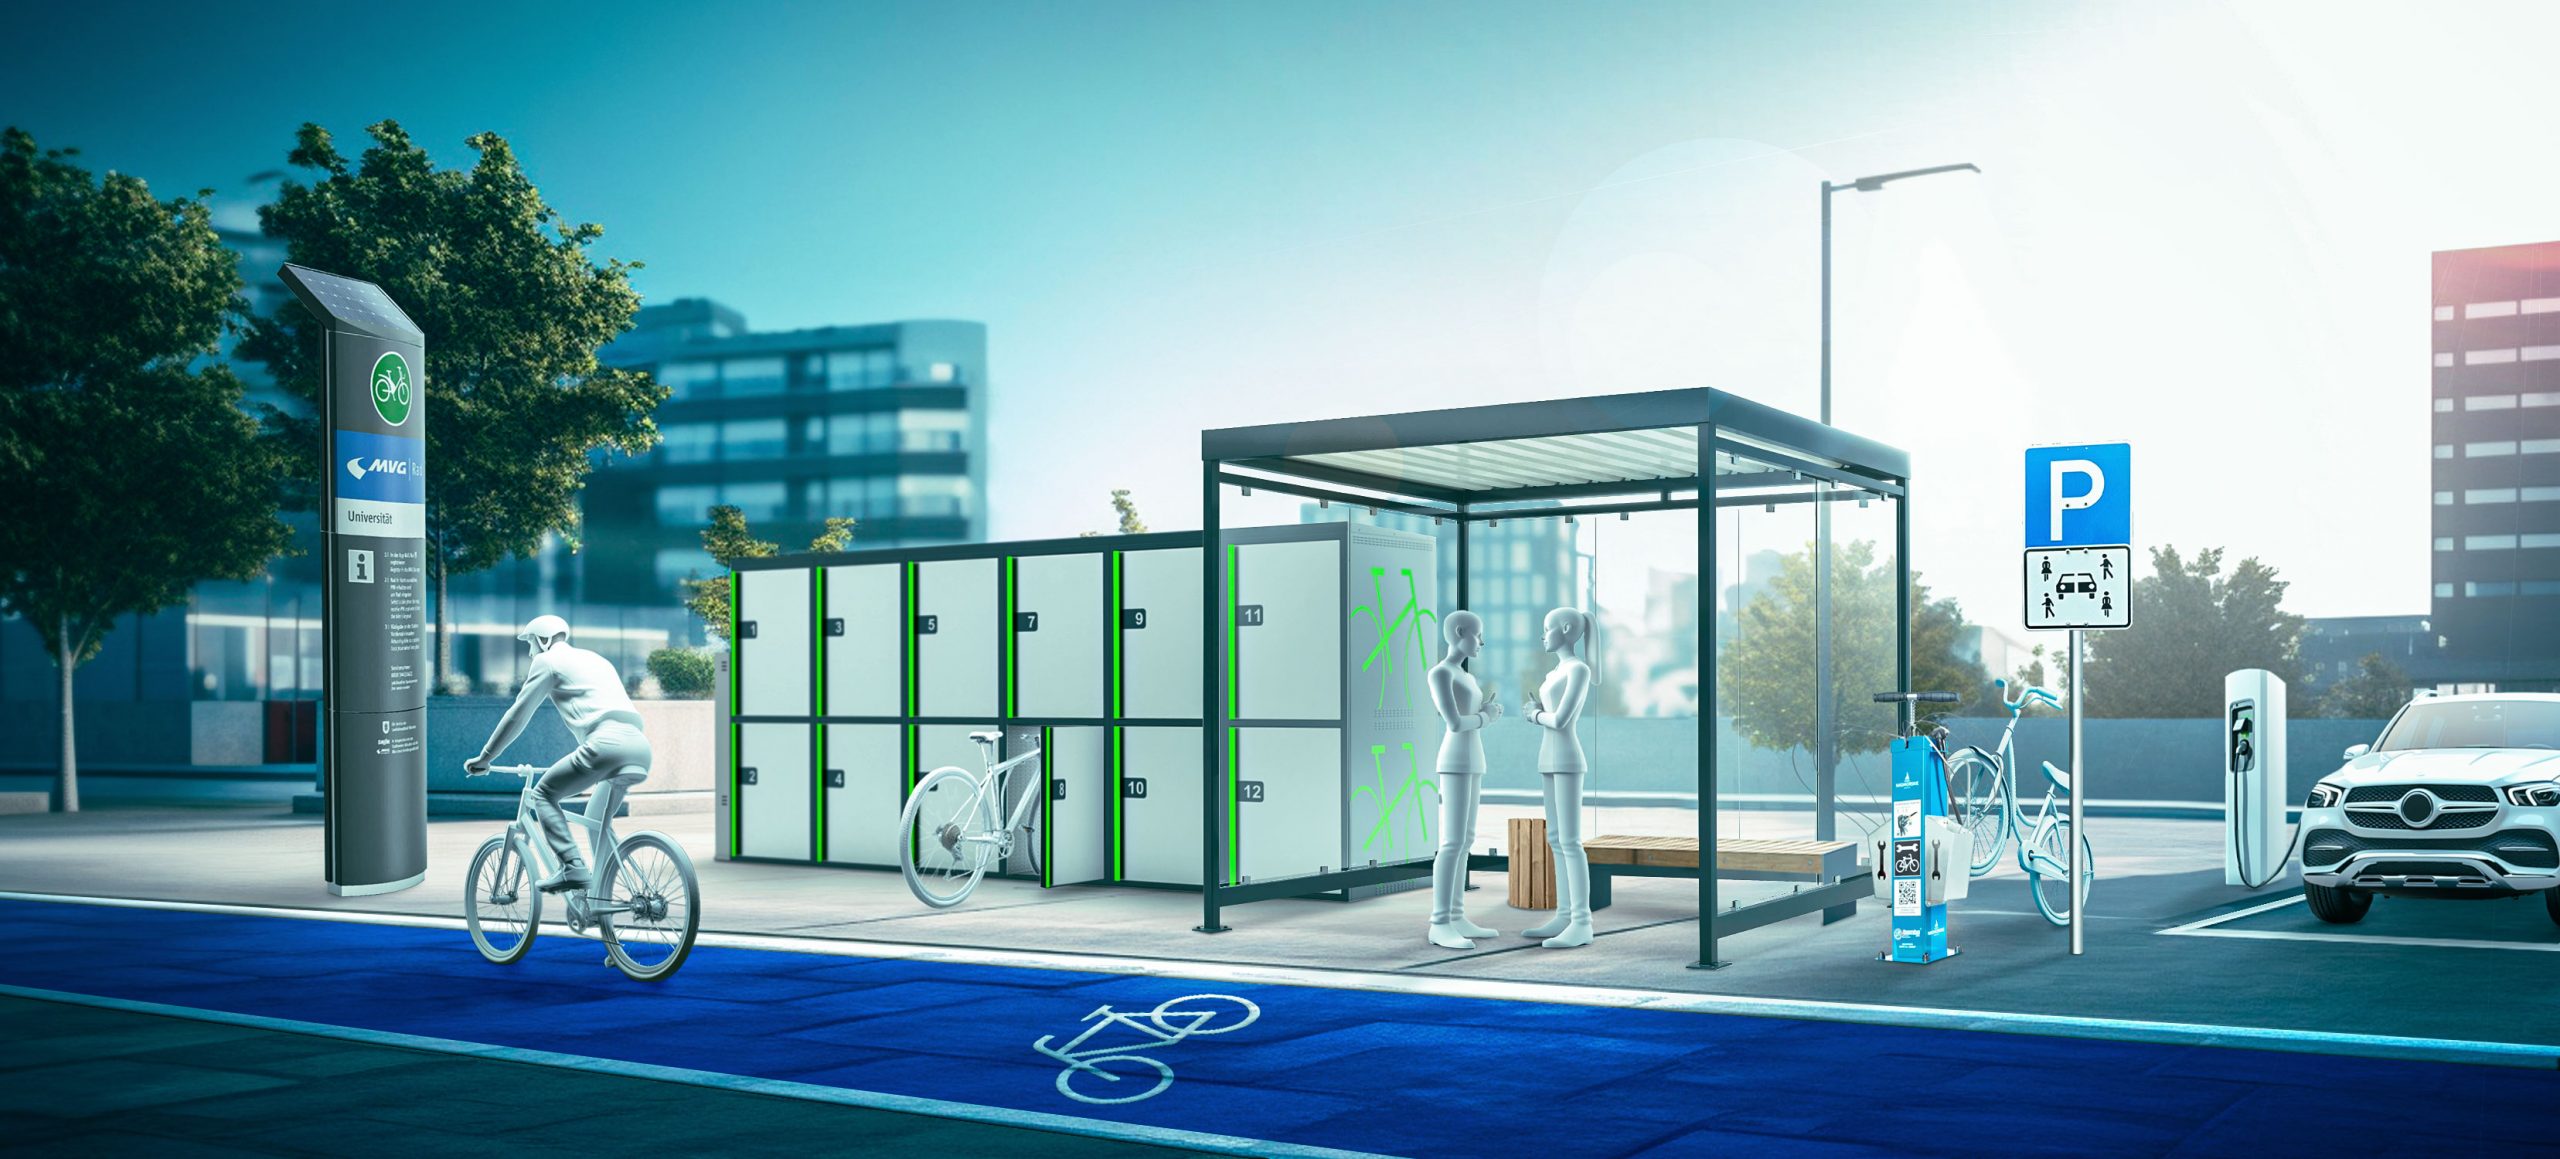 Fahrradfreundliche Kommune - Mobilitätsstation